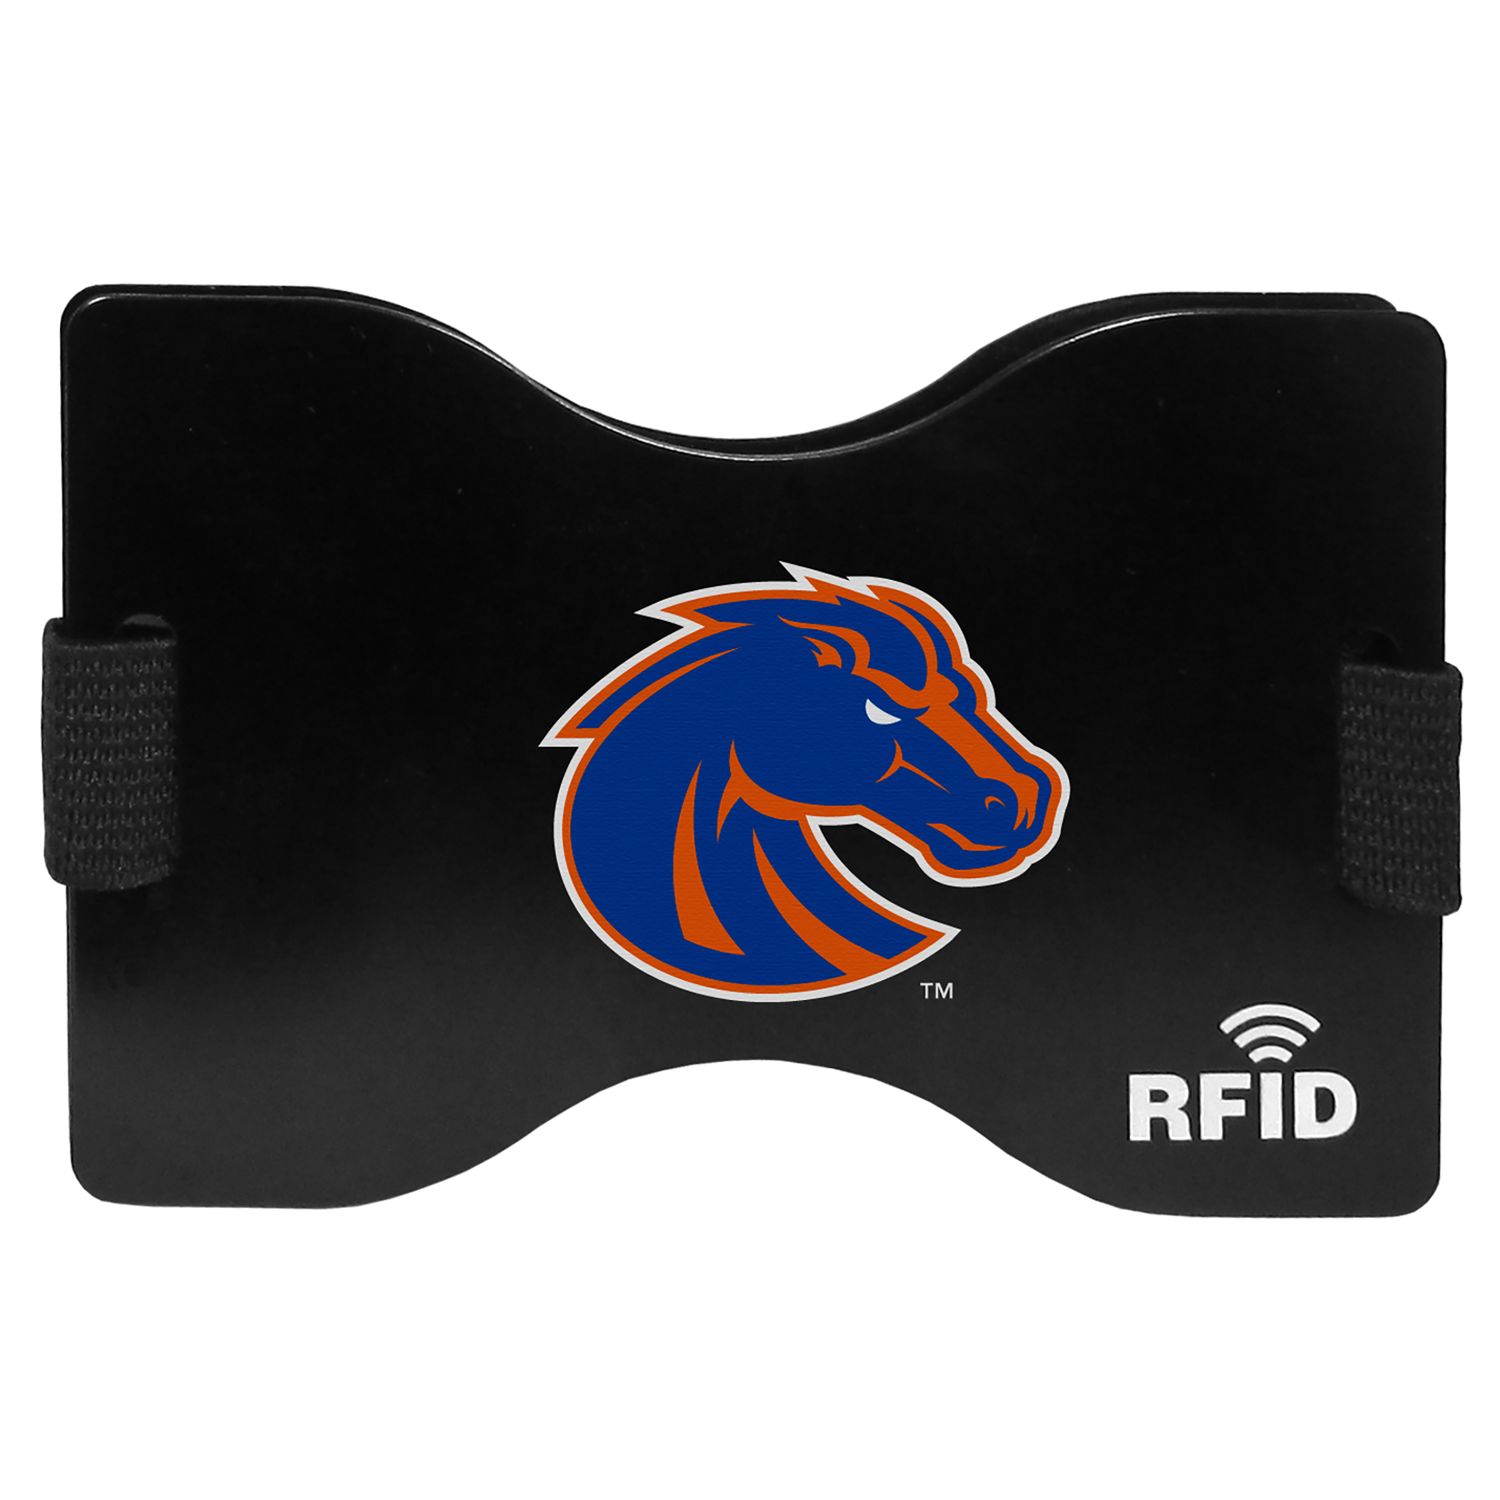 Image for Unbranded Men's Boise State Broncos RFID Wallet at Kohl's.